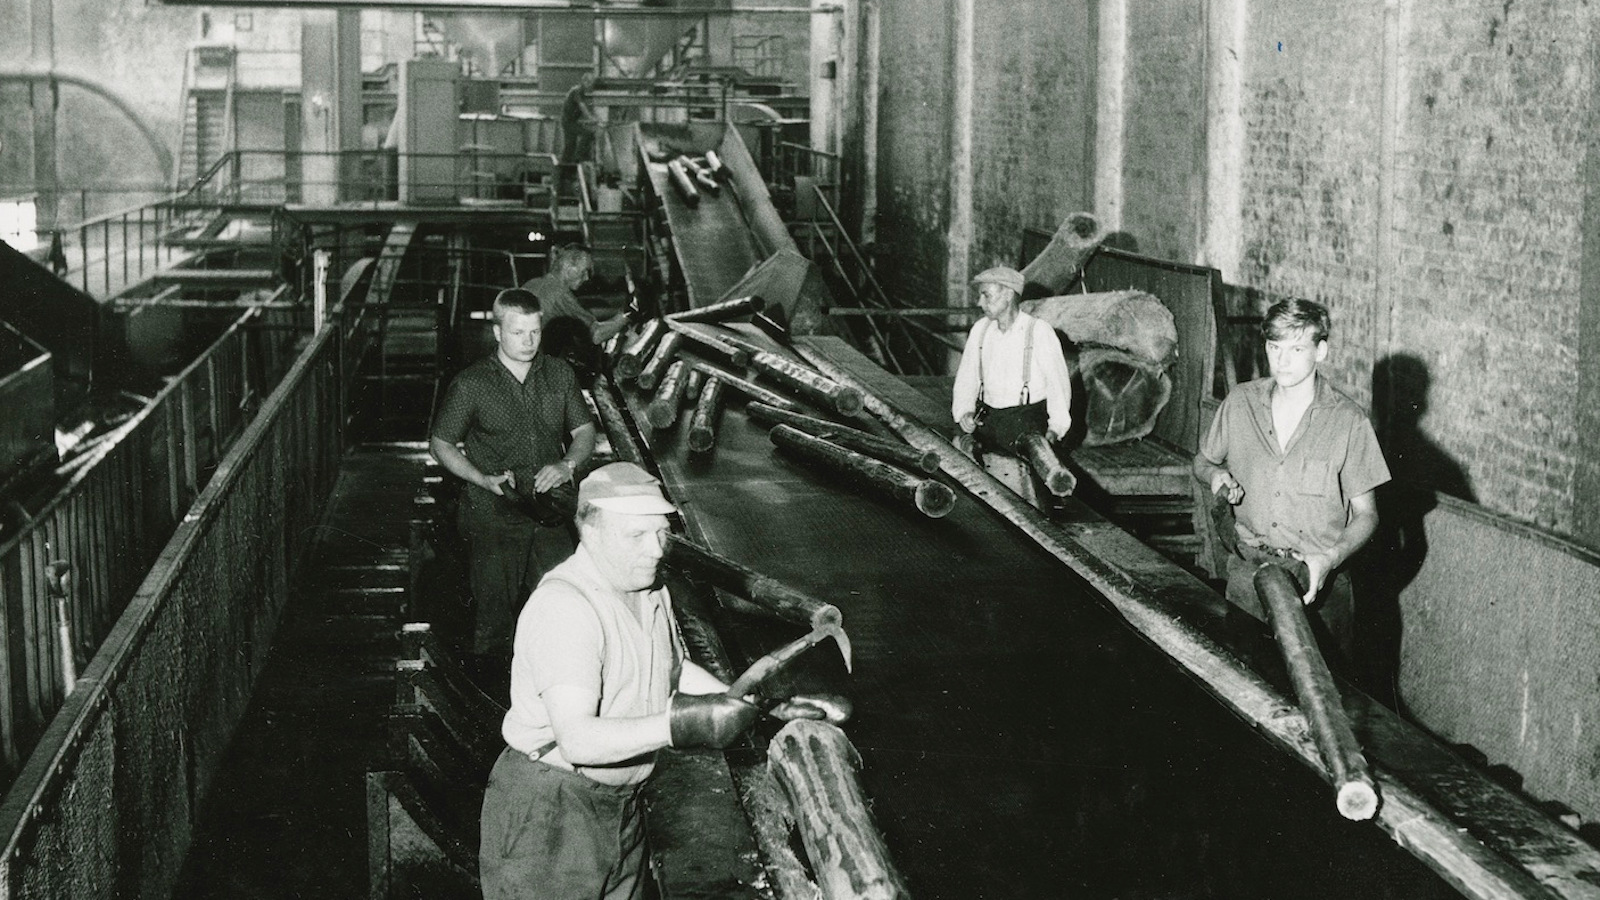 Kuvassa on Serlachiuksen tehtaiden kuorimohalli ja siellä miehiä töissä.  Kuva on musta-valkoinen.